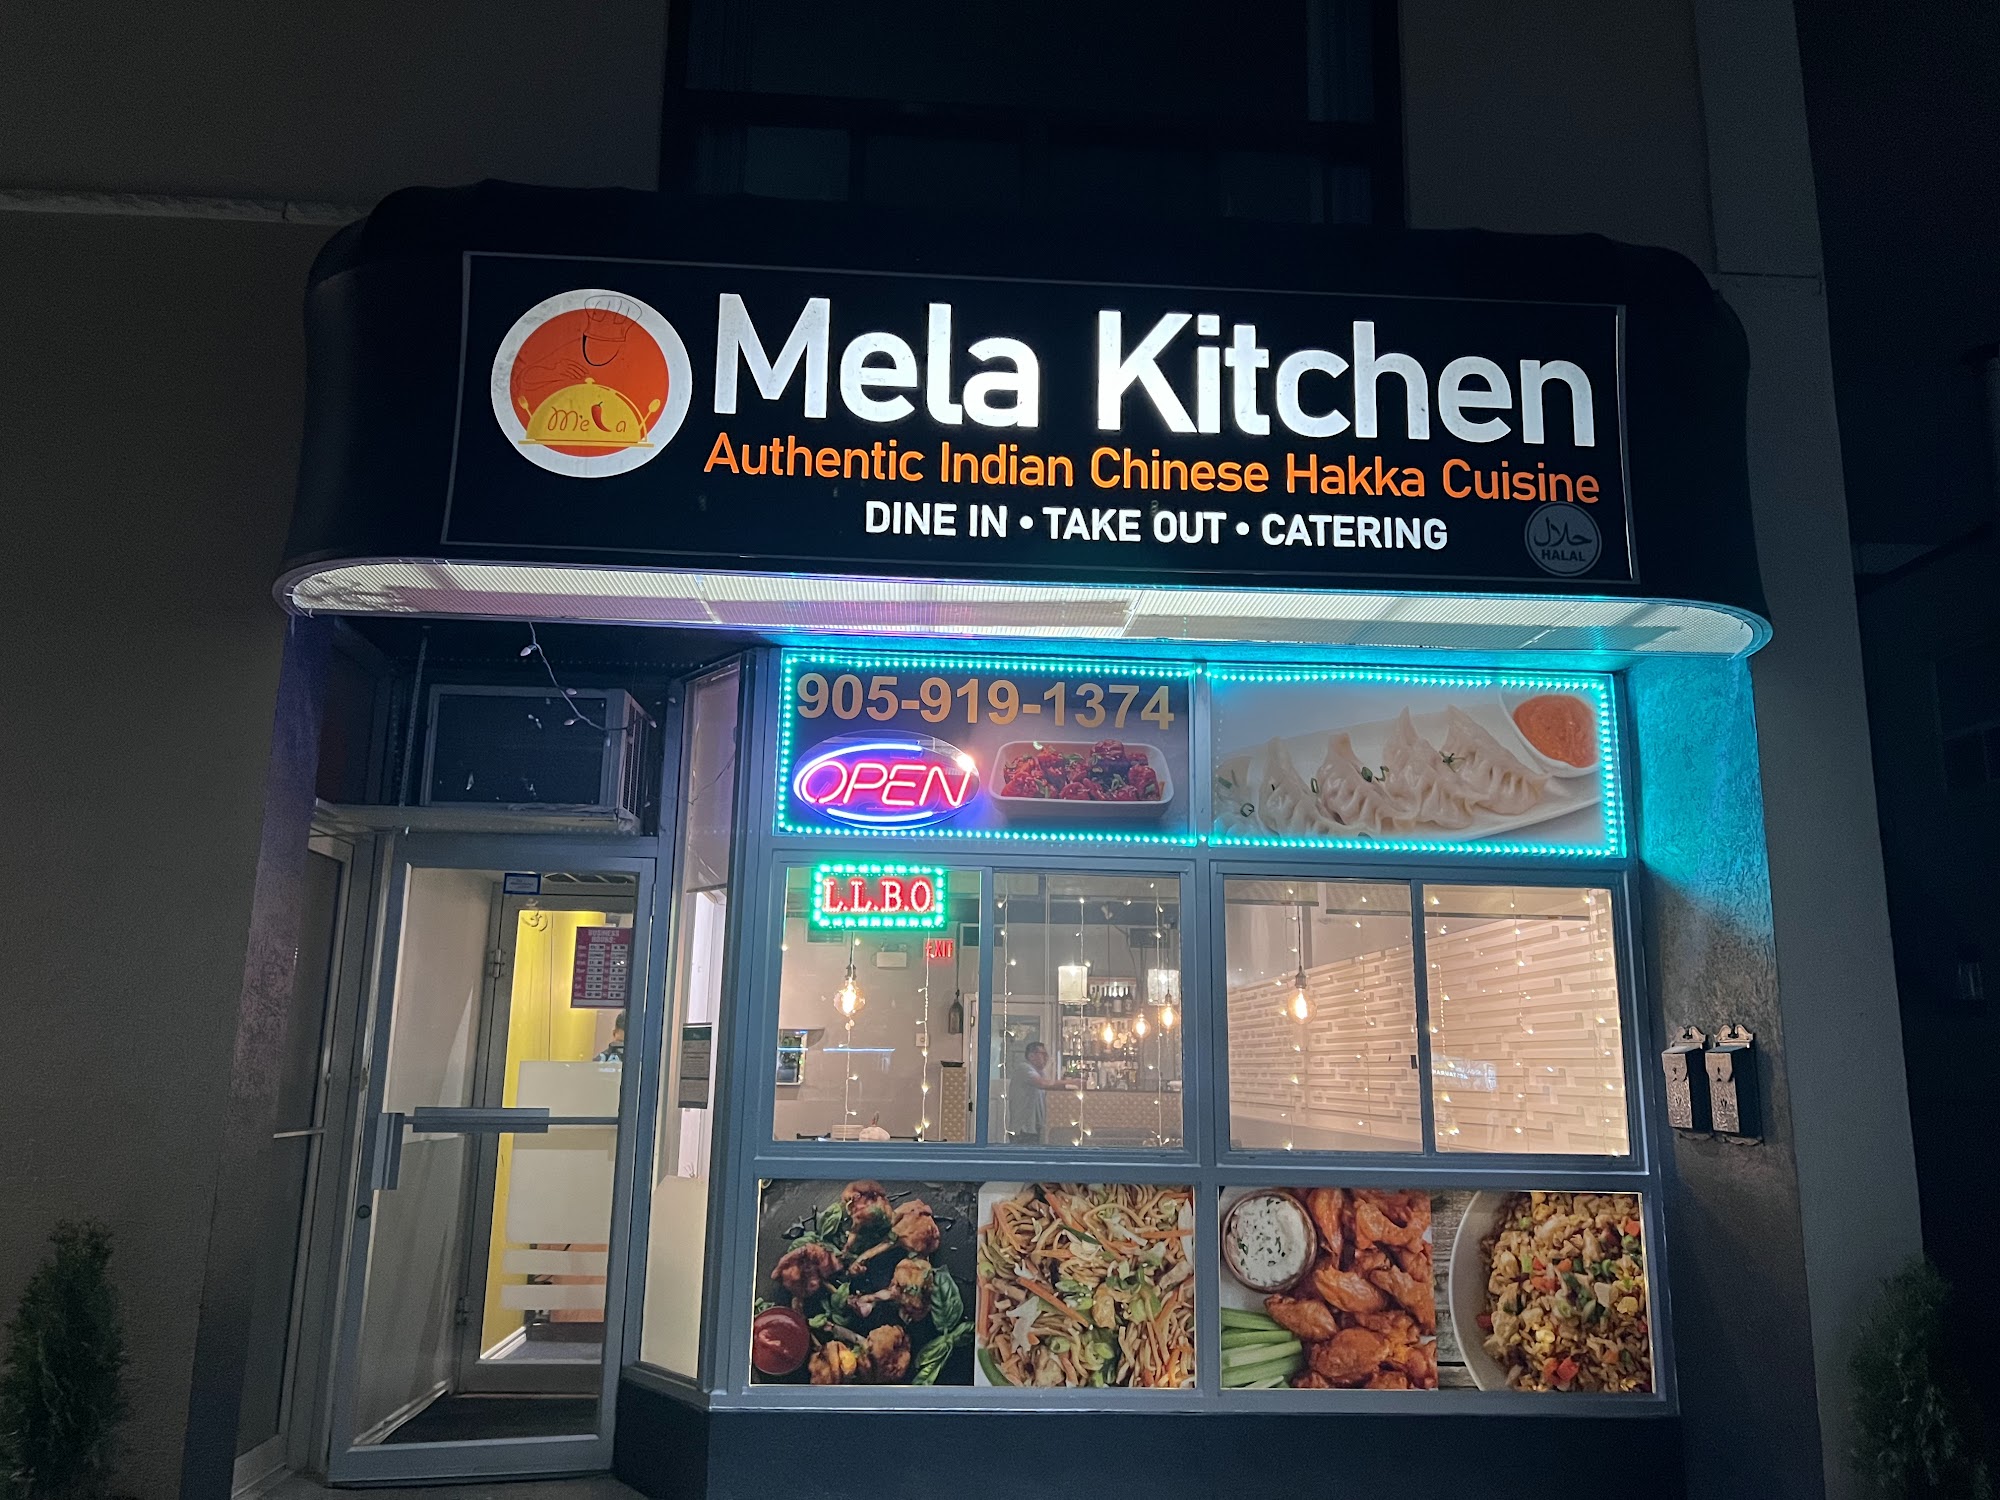 Mela Kitchen (Authentic Indian Chinese Hakka Cuisine)